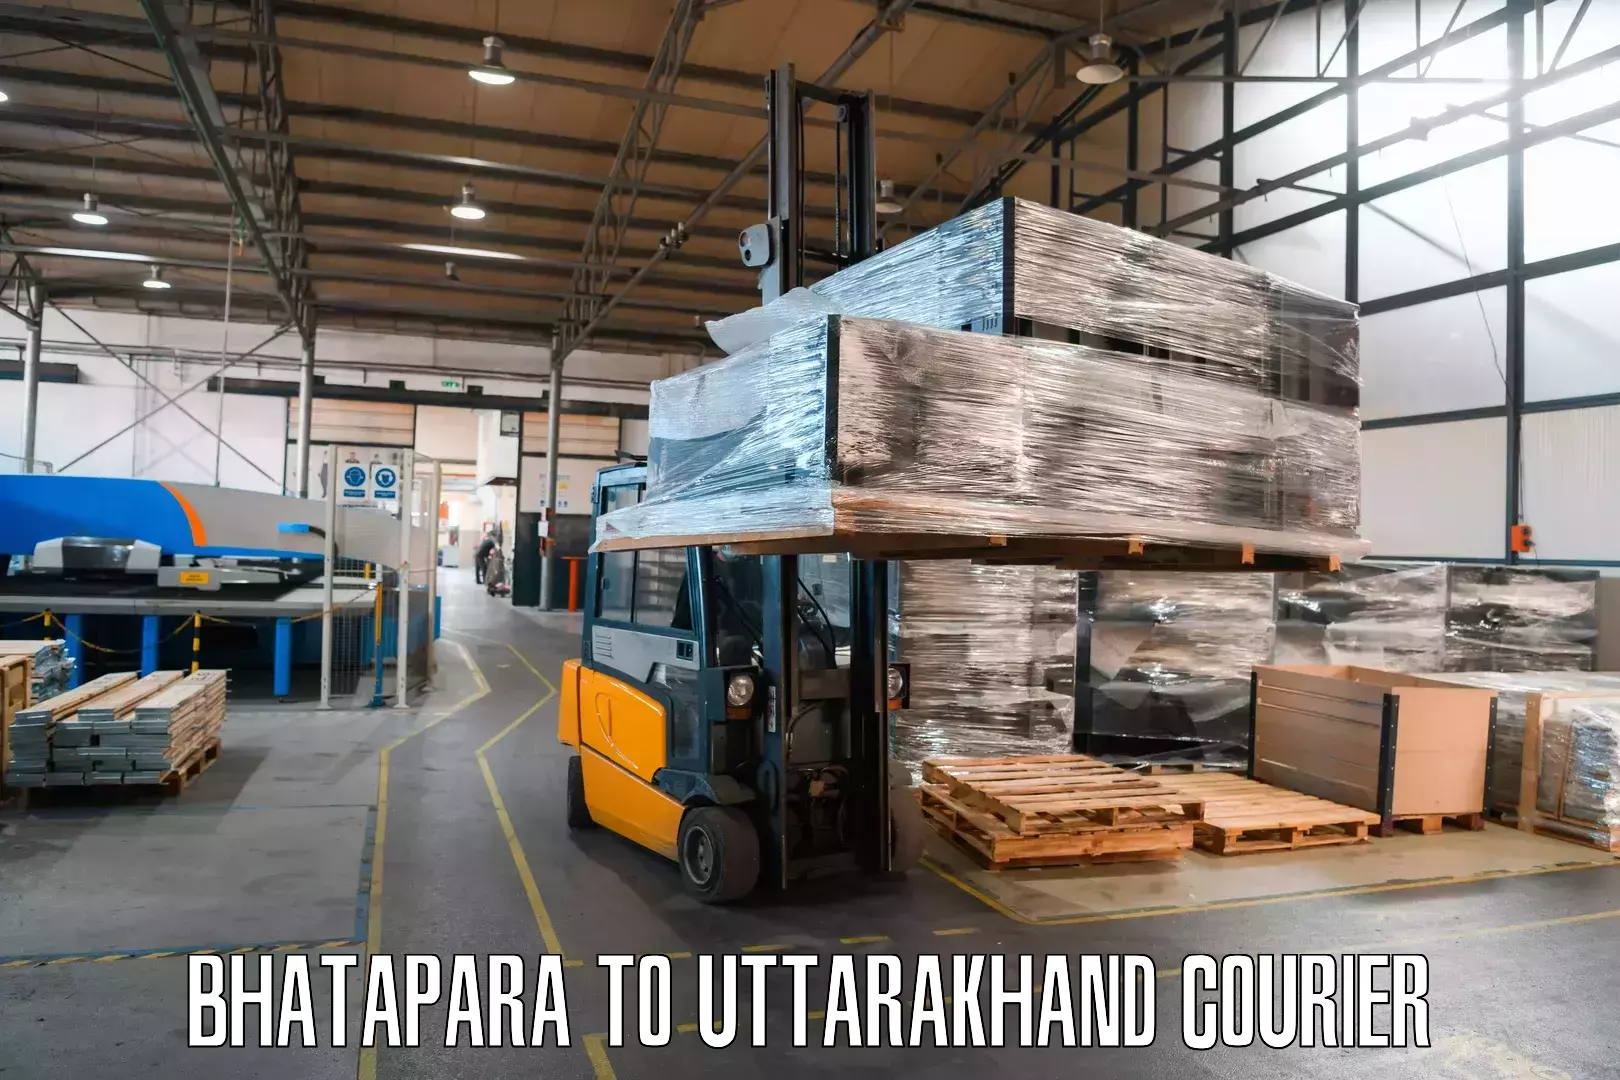 Professional courier handling Bhatapara to Sitarganj